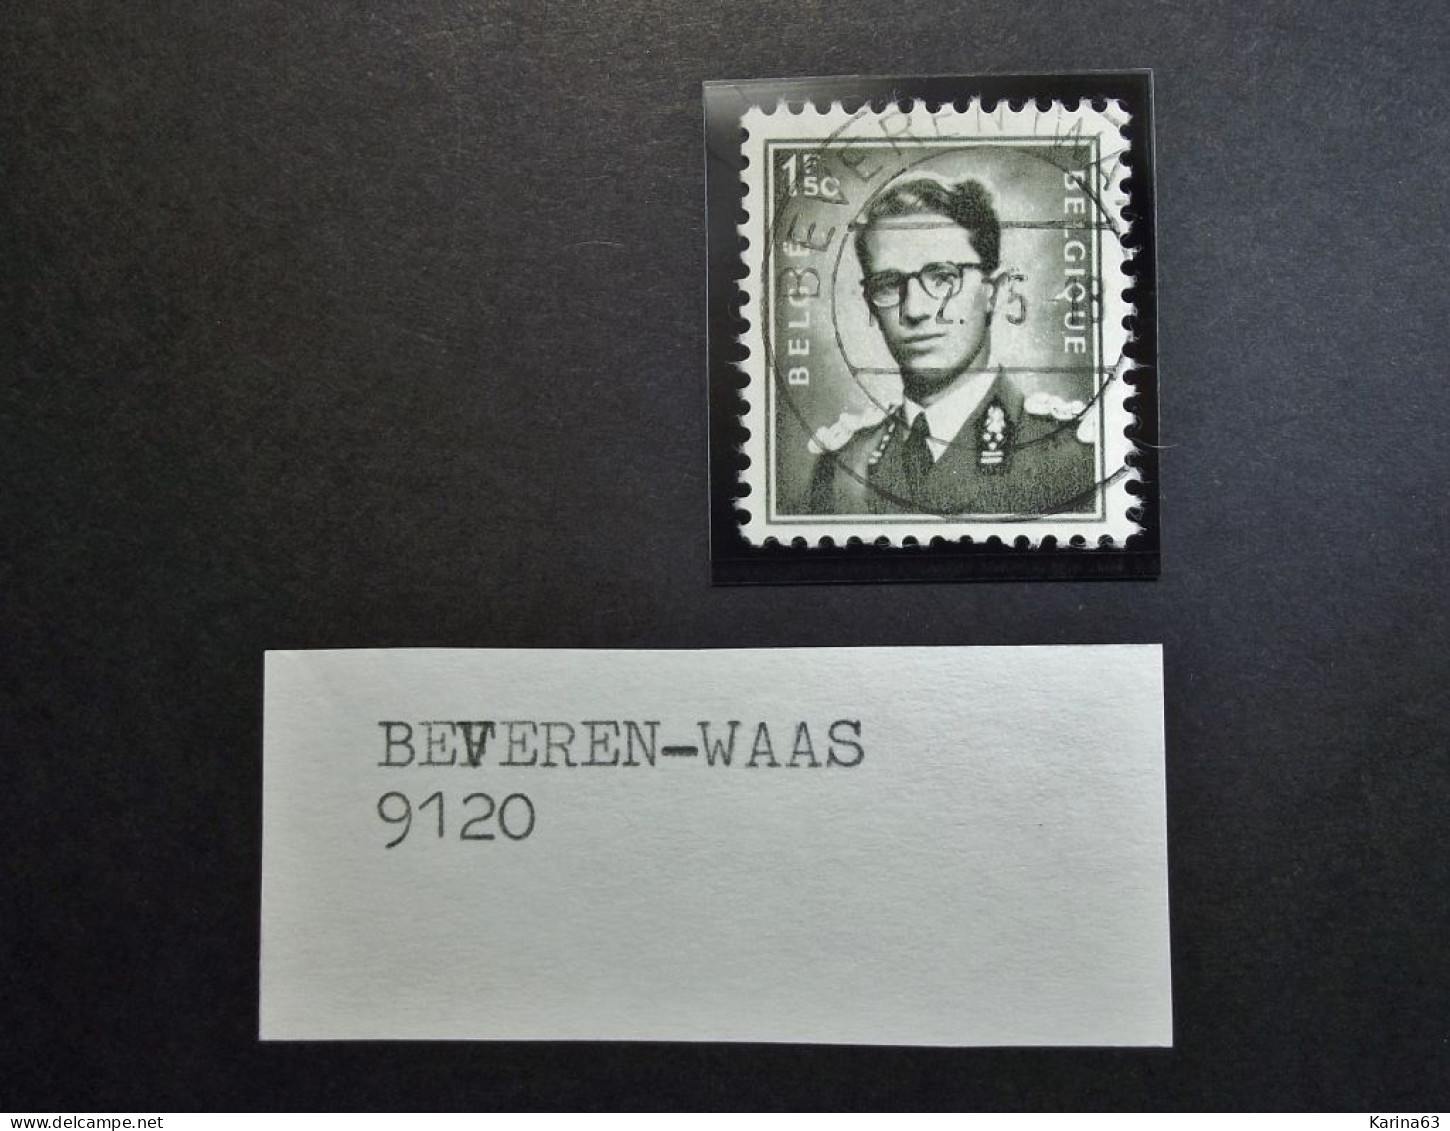 Belgie Belgique - 1953 -  OPB/COB  N° 924 -  1F50   - Obl.  Central Beveren - Waas  - 1975 - Gebruikt